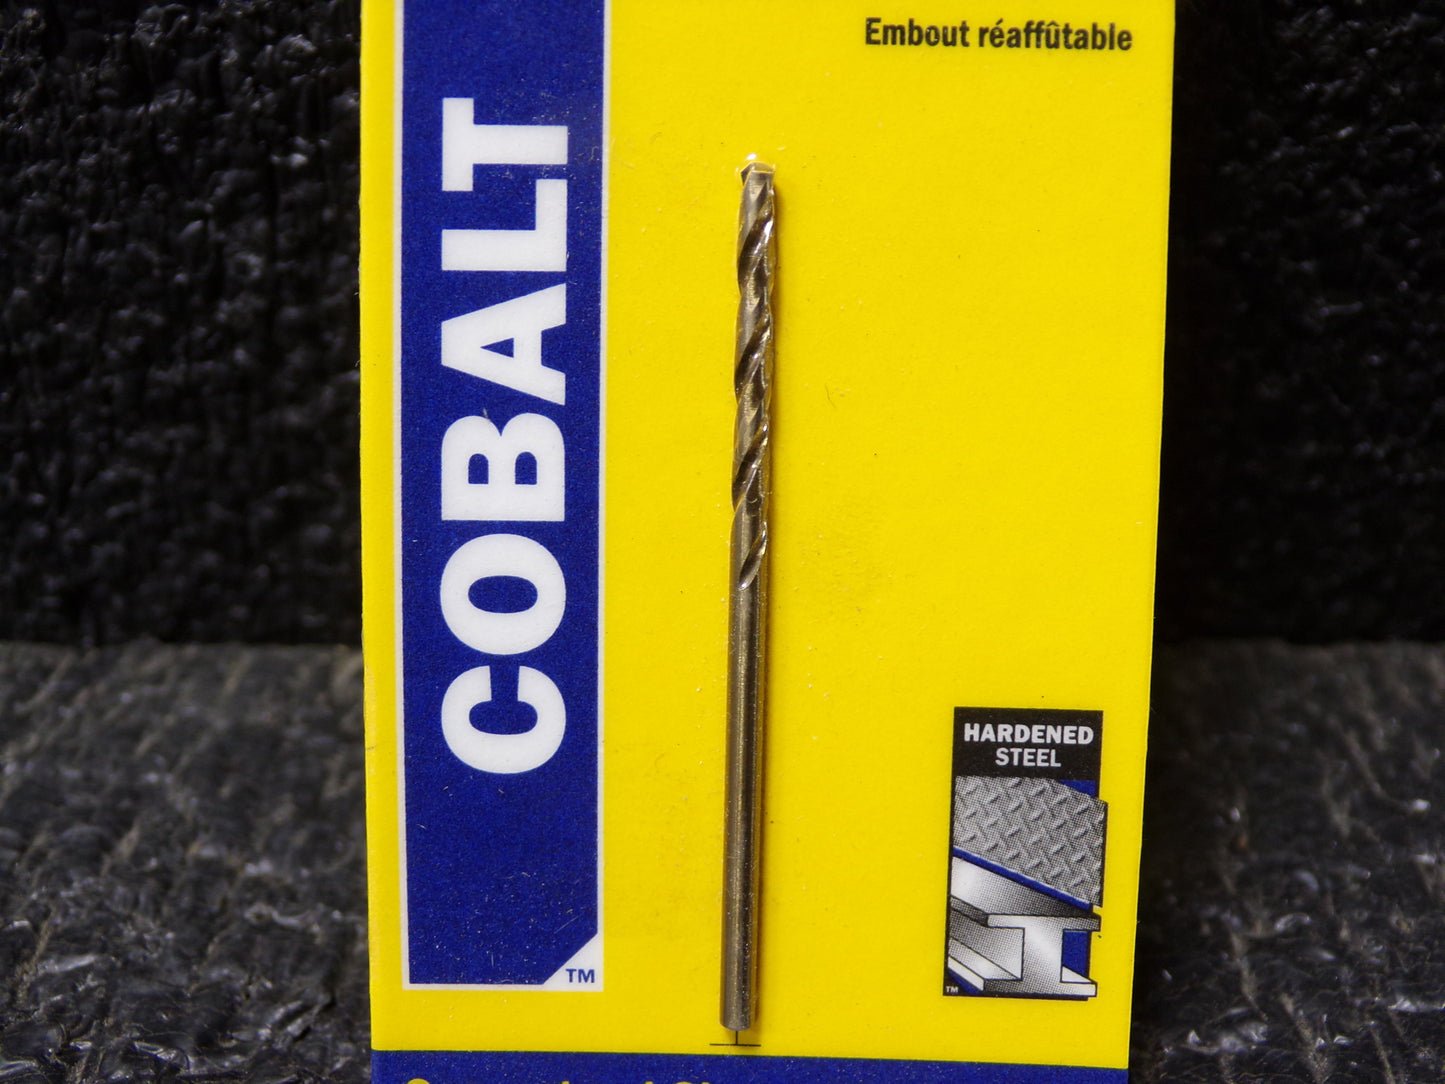 Irwin 3016005 5/64 Inch Cobalt High Speed Steel Drill Bit (CR00217-BT27)